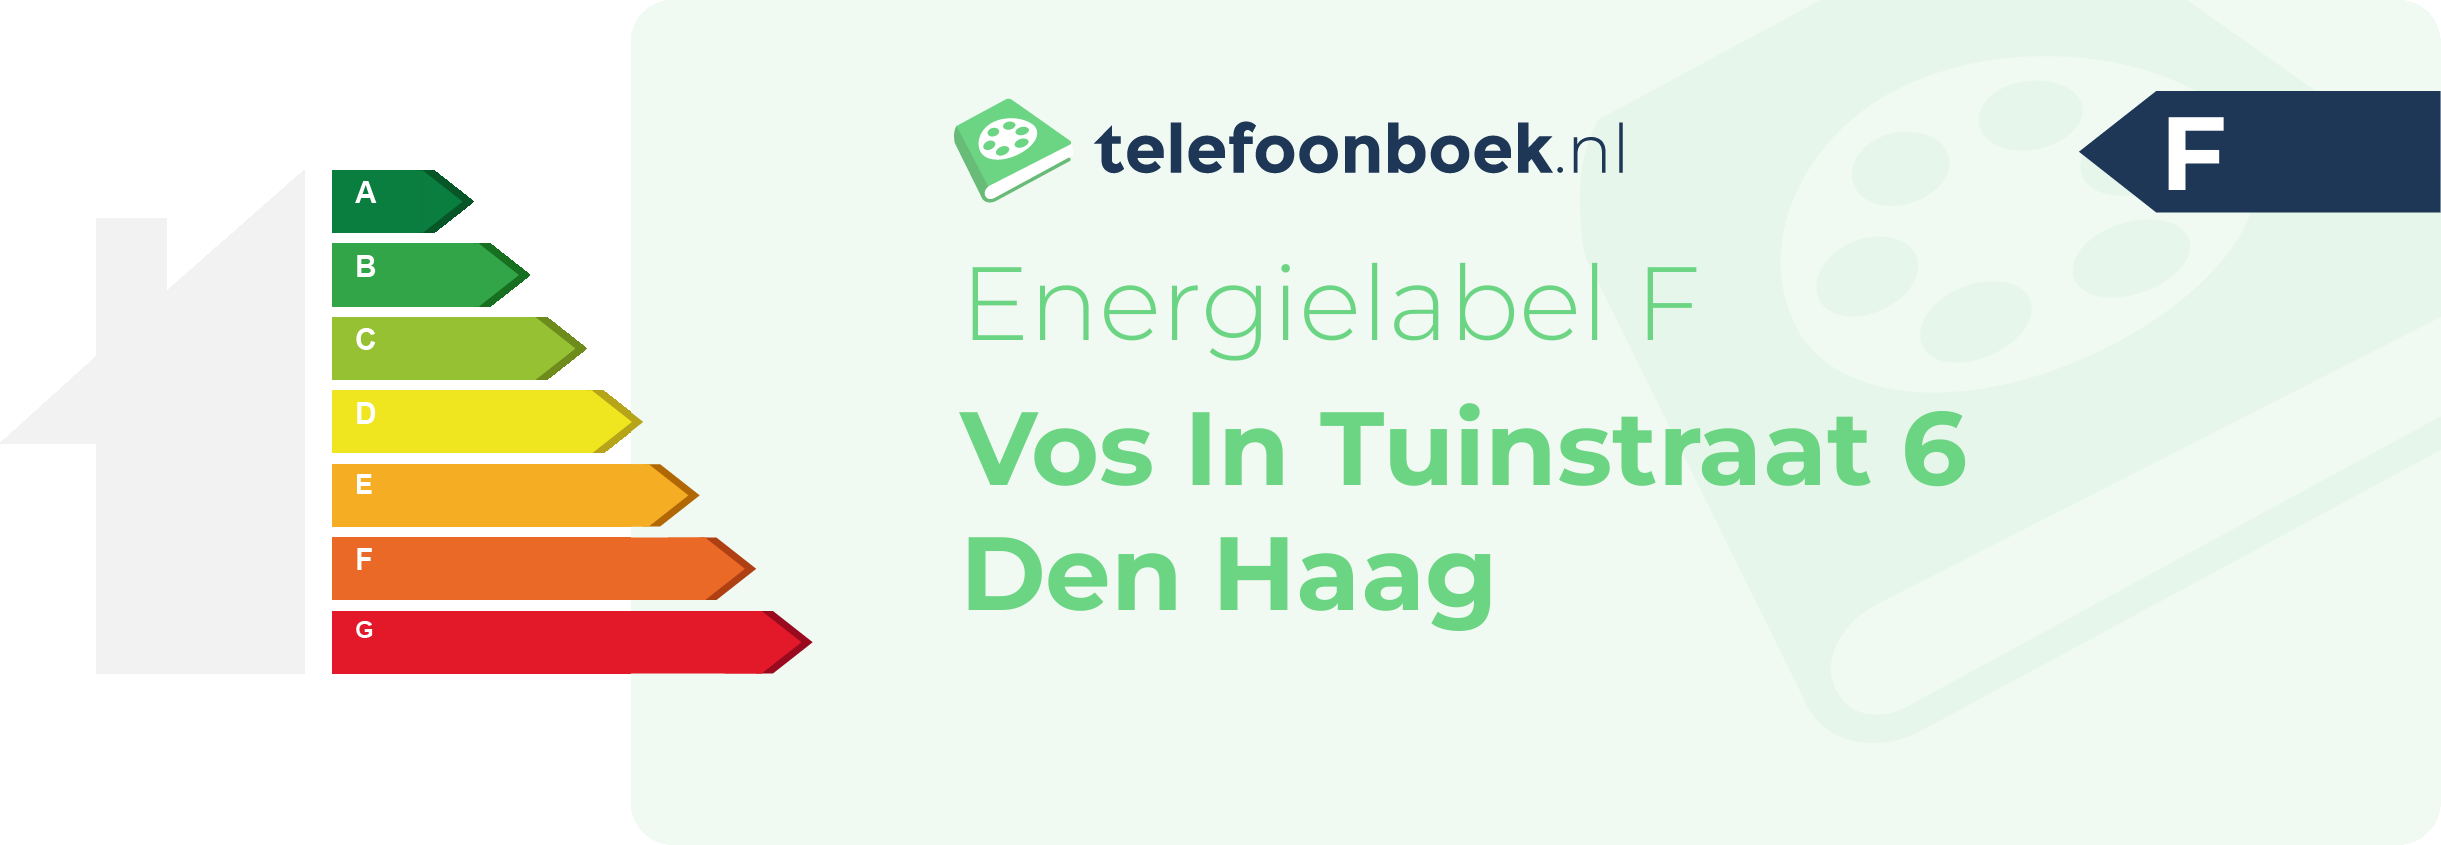 Energielabel Vos In Tuinstraat 6 Den Haag